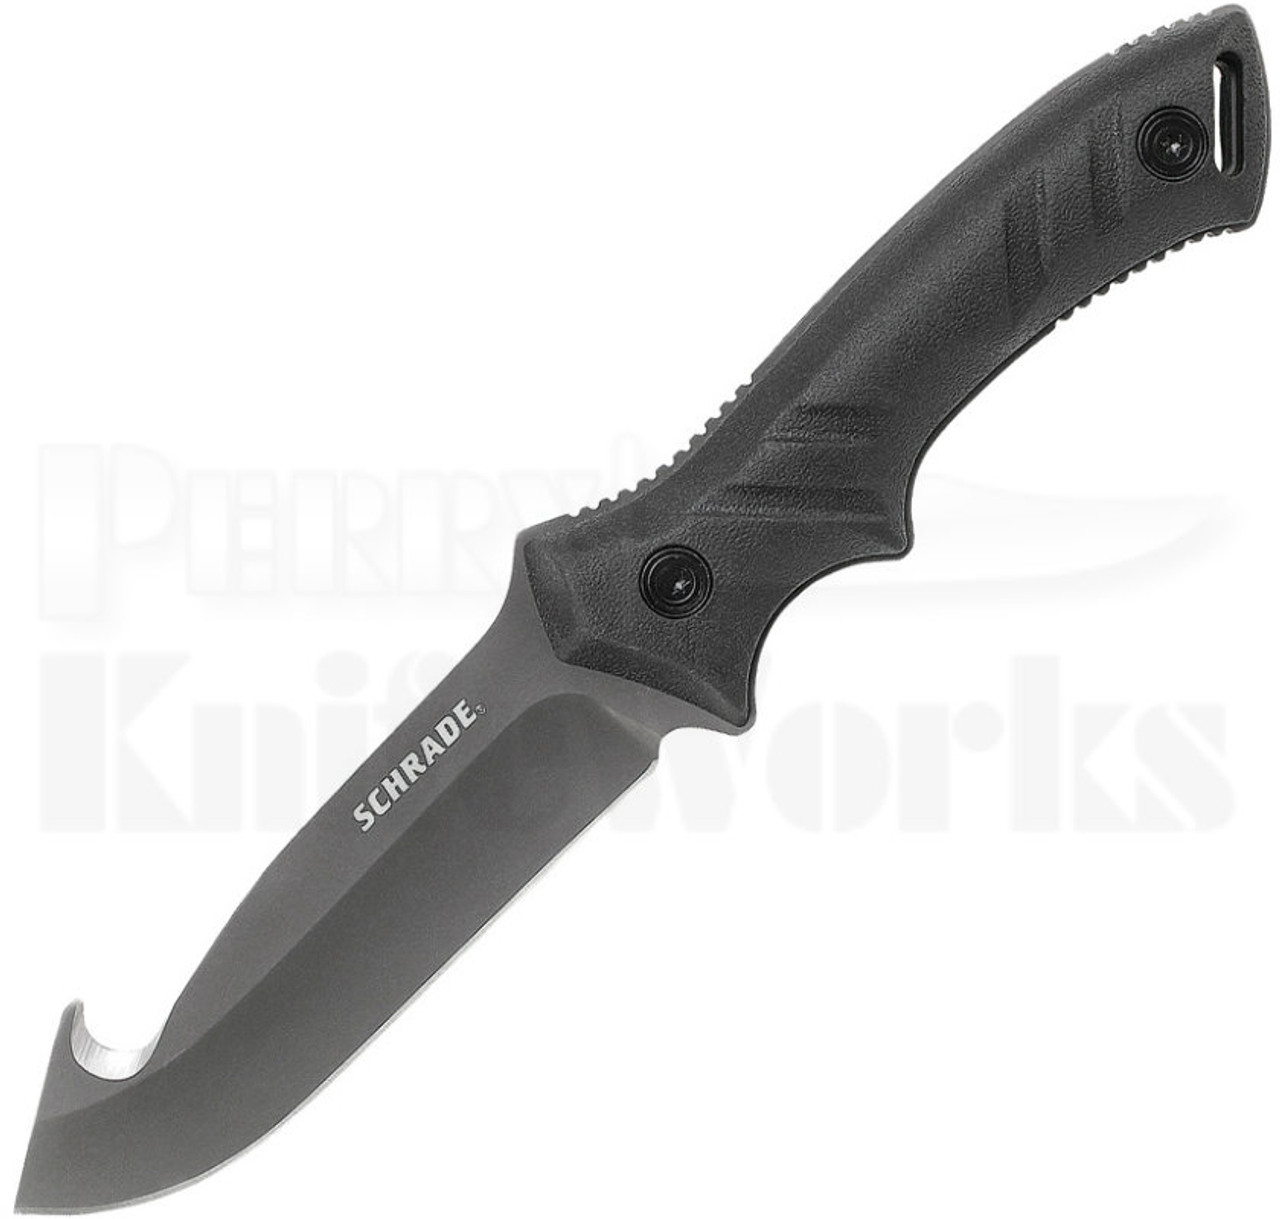 Schrade SCHF31GH Gut-Hook Fixed Blade Knife $19.95